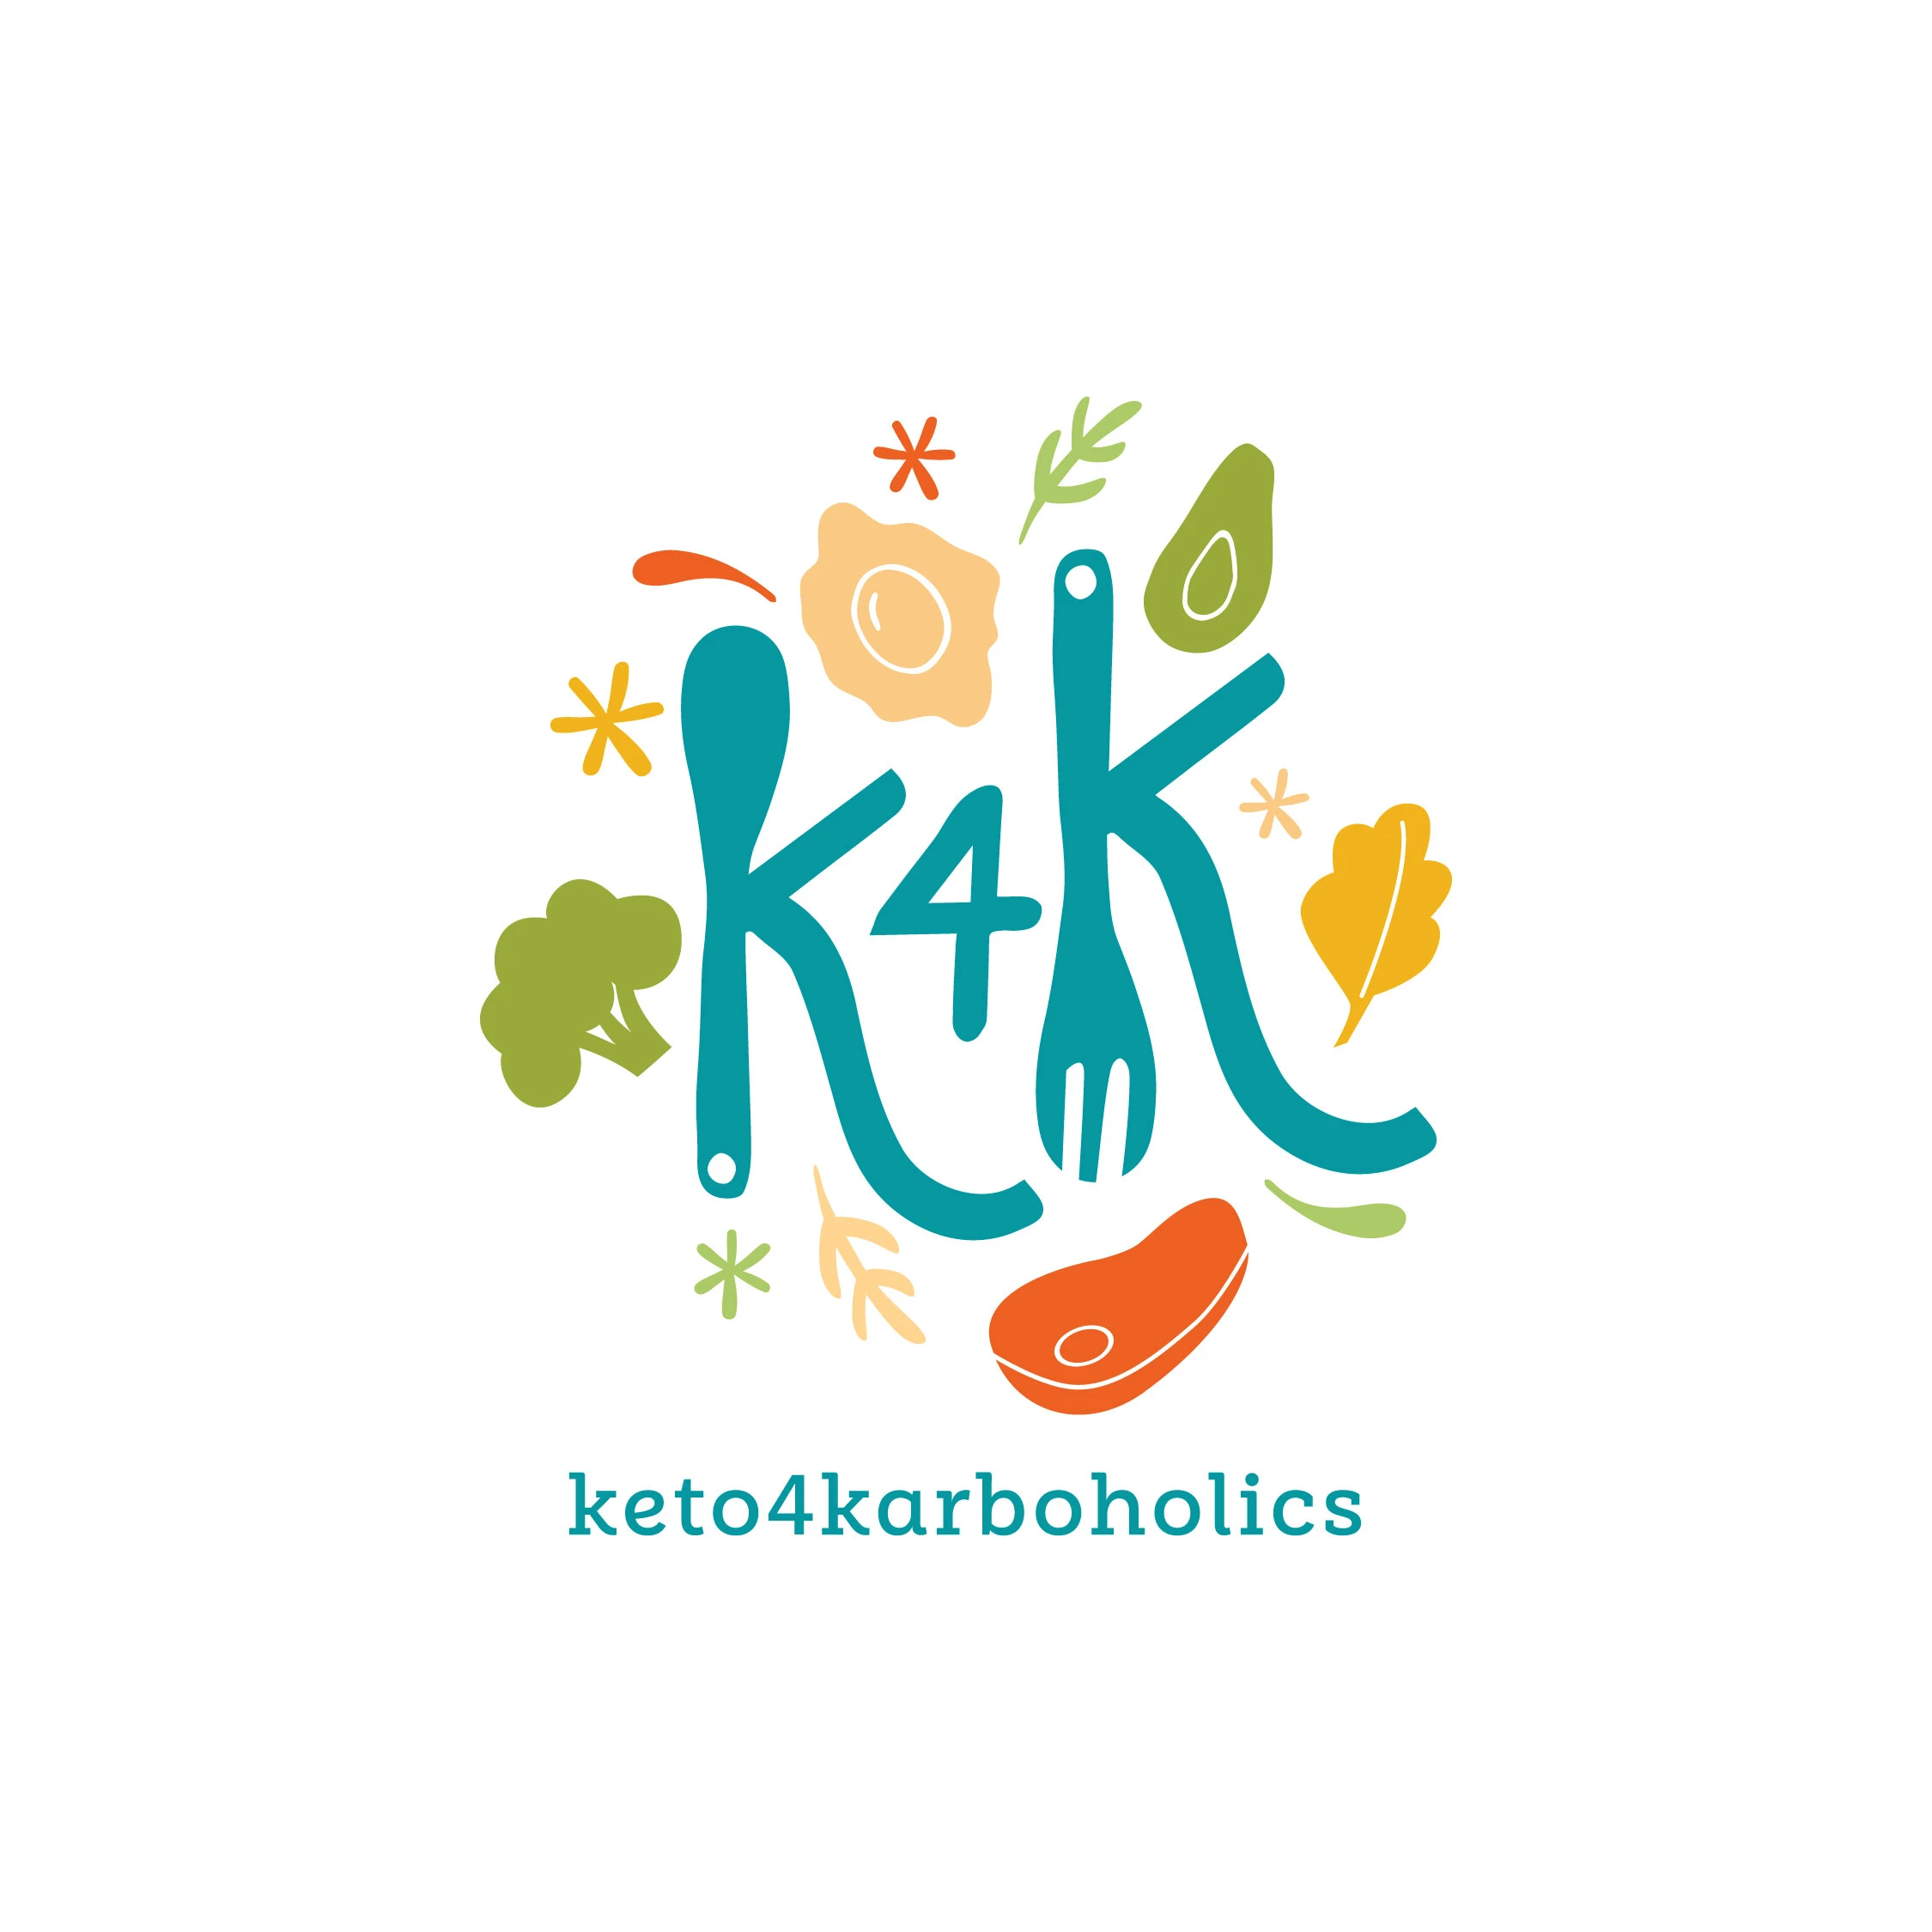 keto4karboholics.com